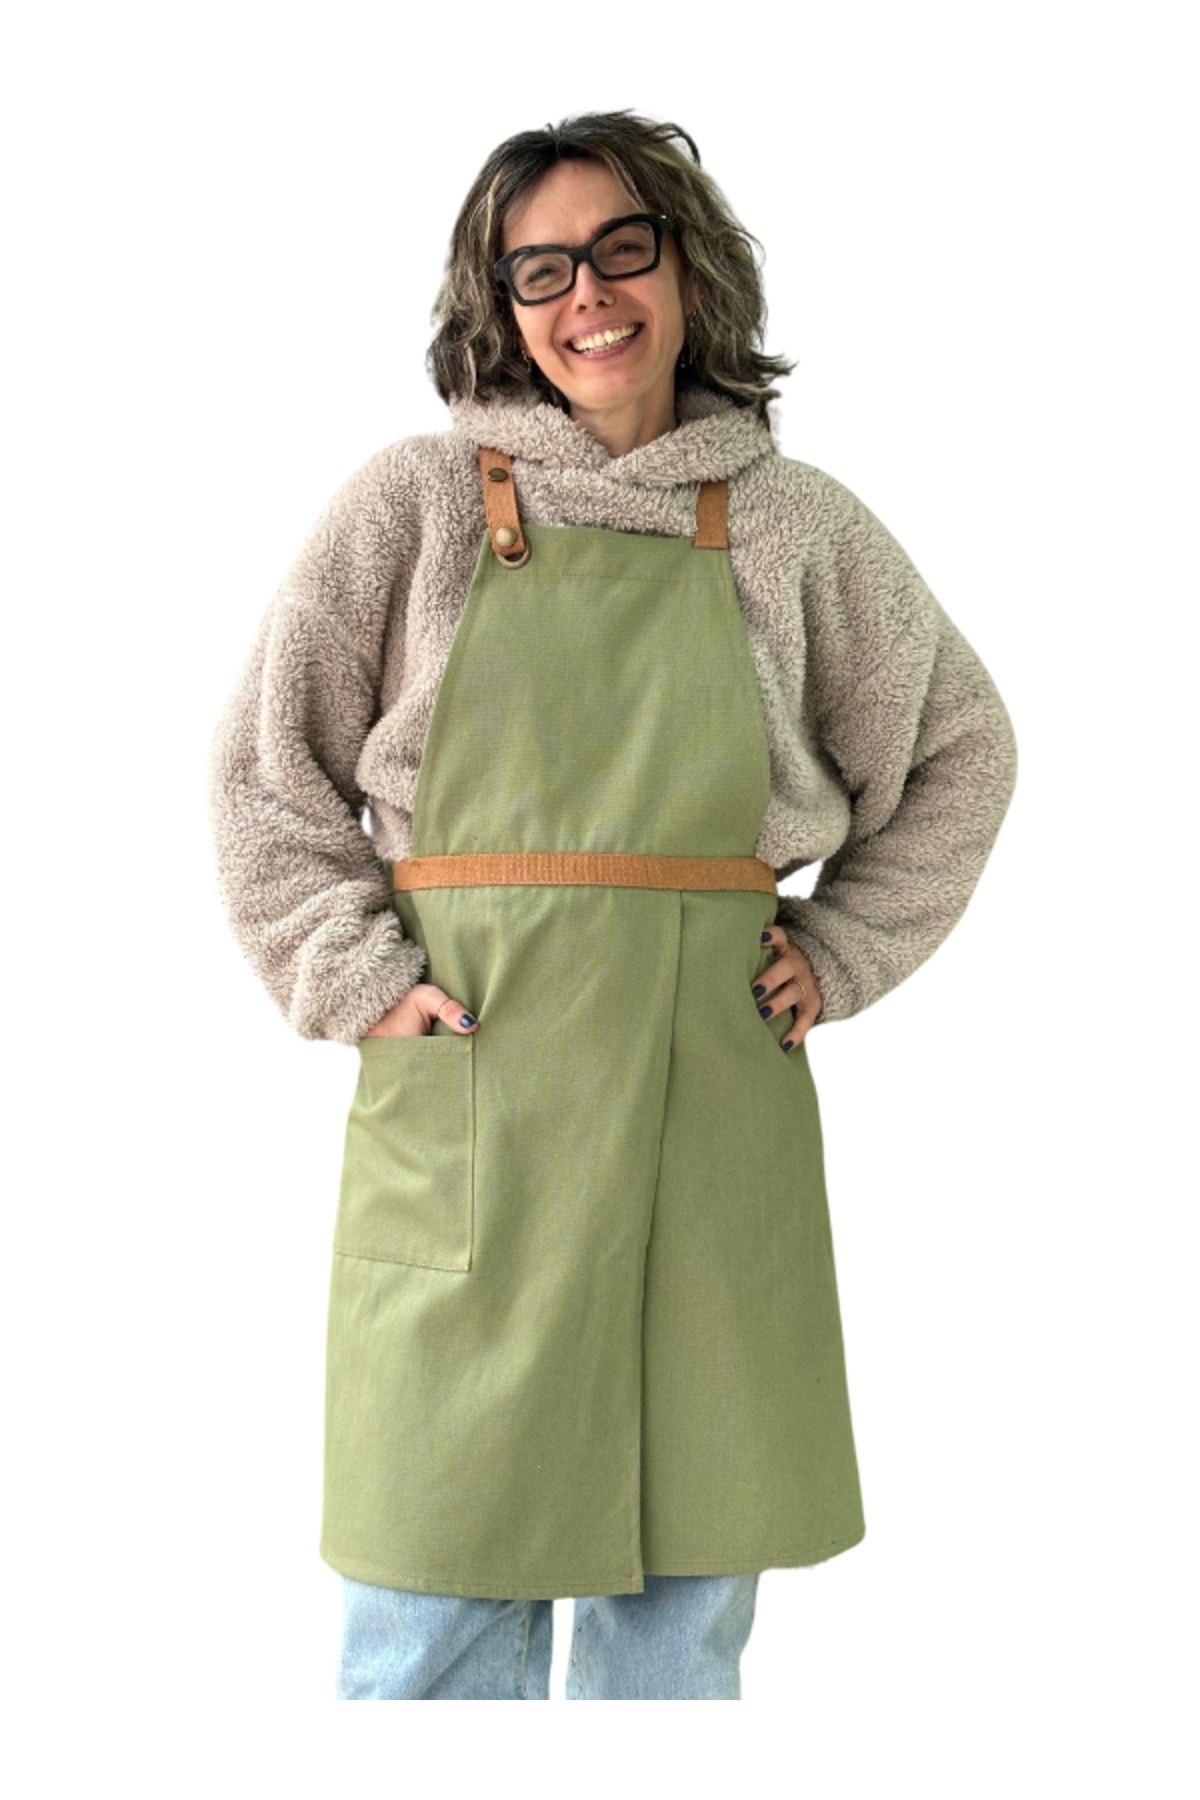 Monki Haus Çiçekçi Seramik Mutfak Kafe Barista Garson Kuaför Atölye Chef Tasarım Yırtmaçlı Önlük Erkek Kadın